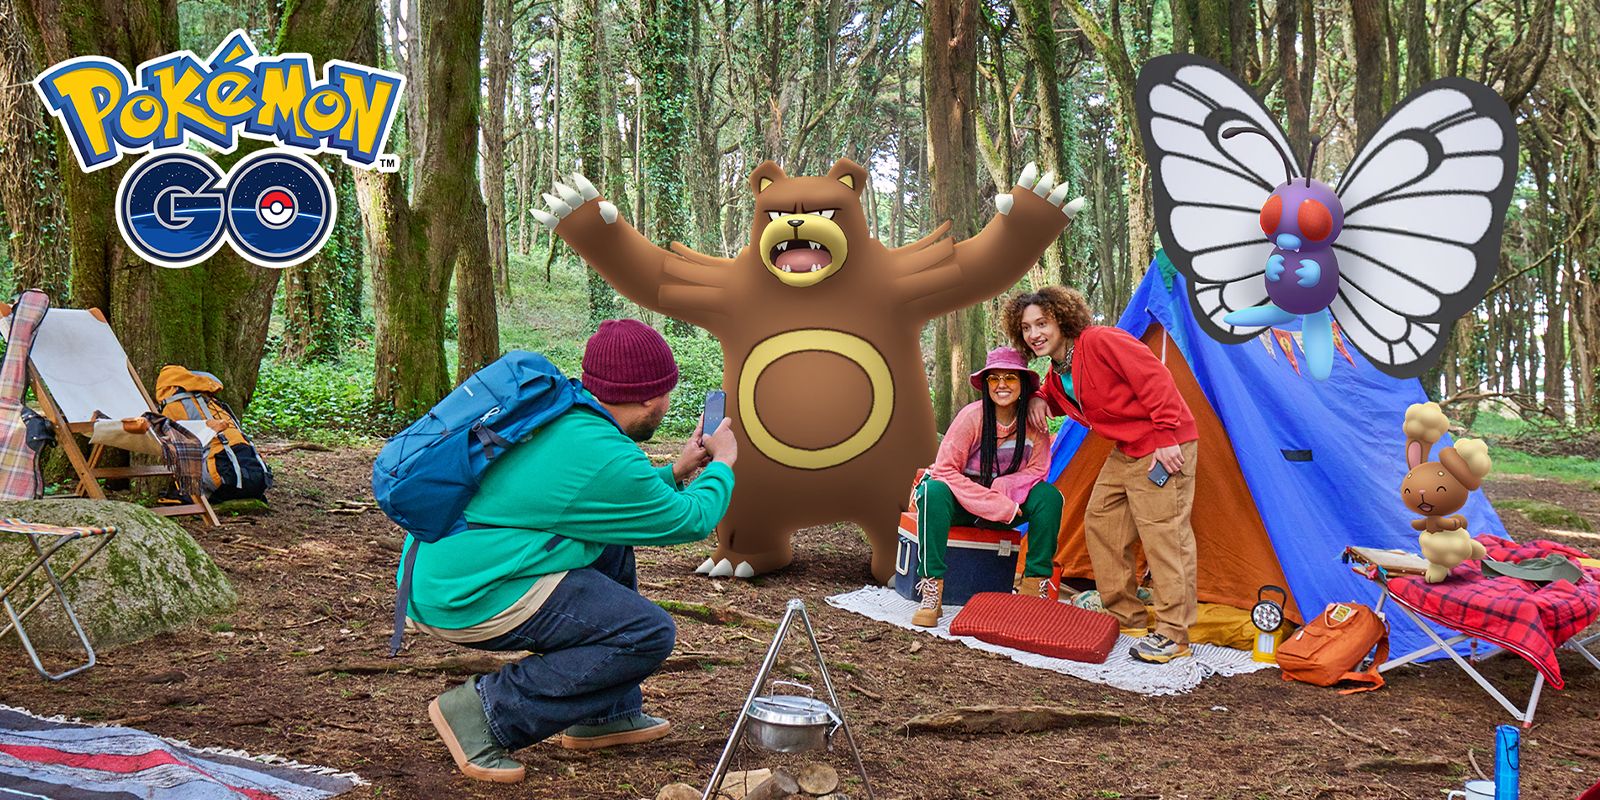 Duas pessoas posando ao lado de uma barraca com o Pokémon Ursaring em pé sobre seus ombros, outra pessoa está ajoelhada tirando uma foto em seu telefone.